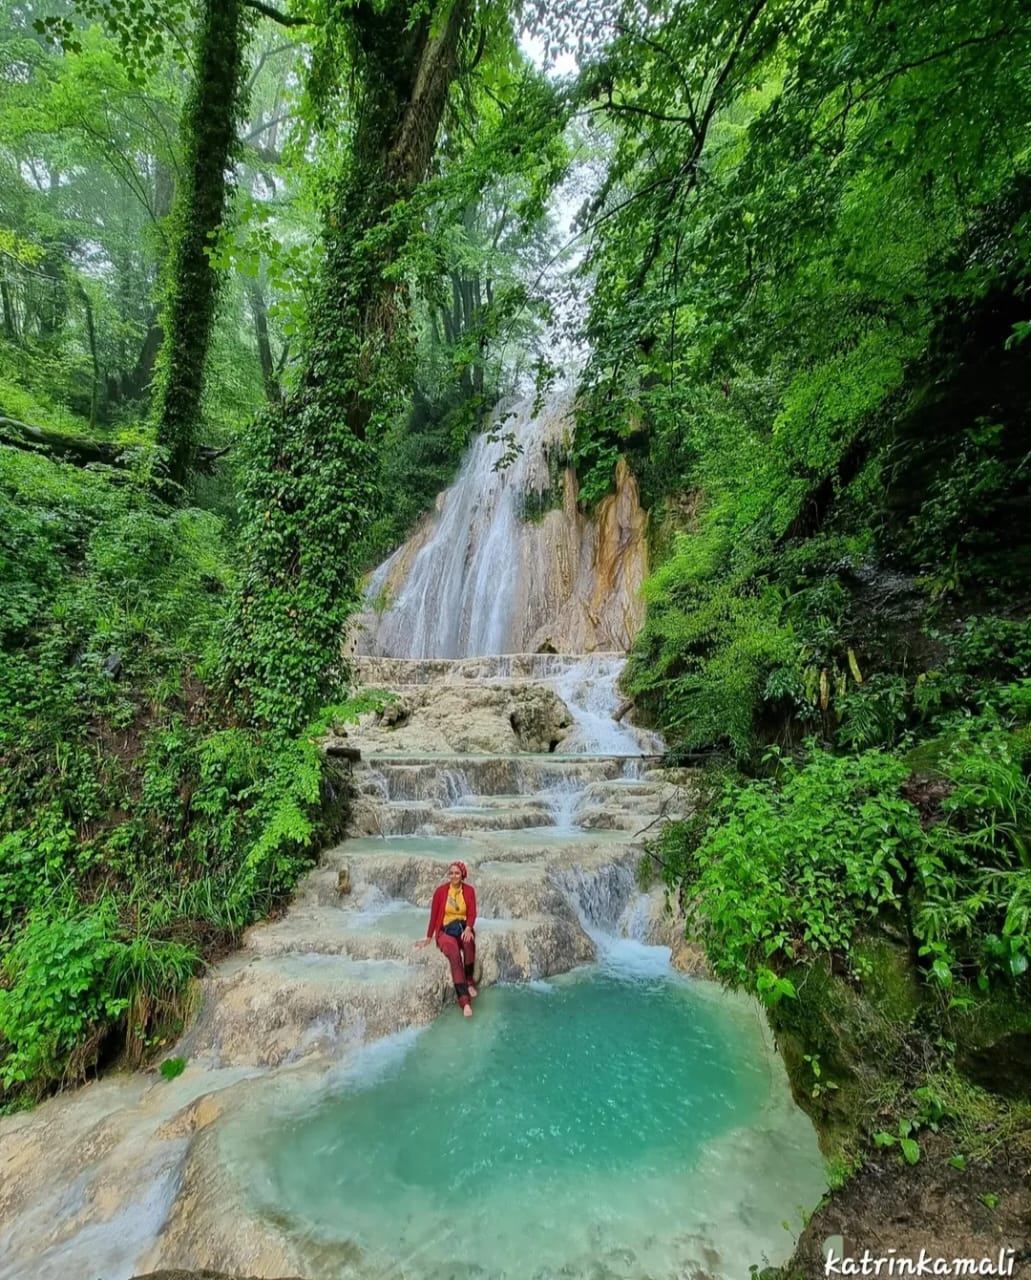 زیباترین آبشار سوادکوه مازندران کجاست؟ / نظر کاترین کمالی